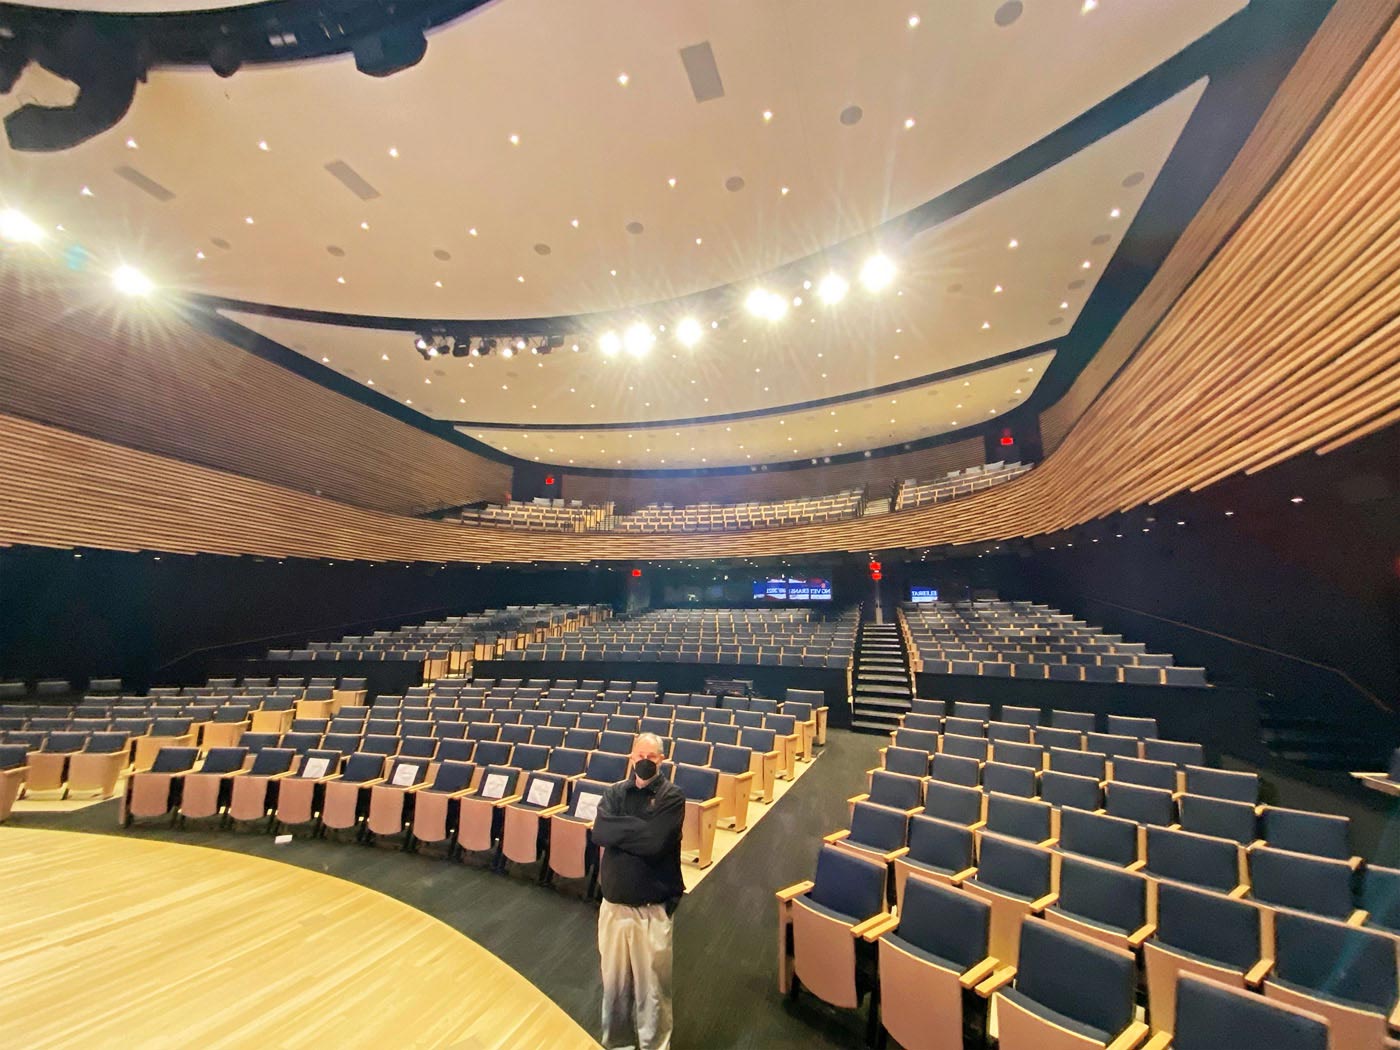 La progettazione su due livelli dell'auditorium ha incrementato al massimo i posti a sedere disponibili per gli eventi pubblici ospitati e per gli eventi privati su invito.